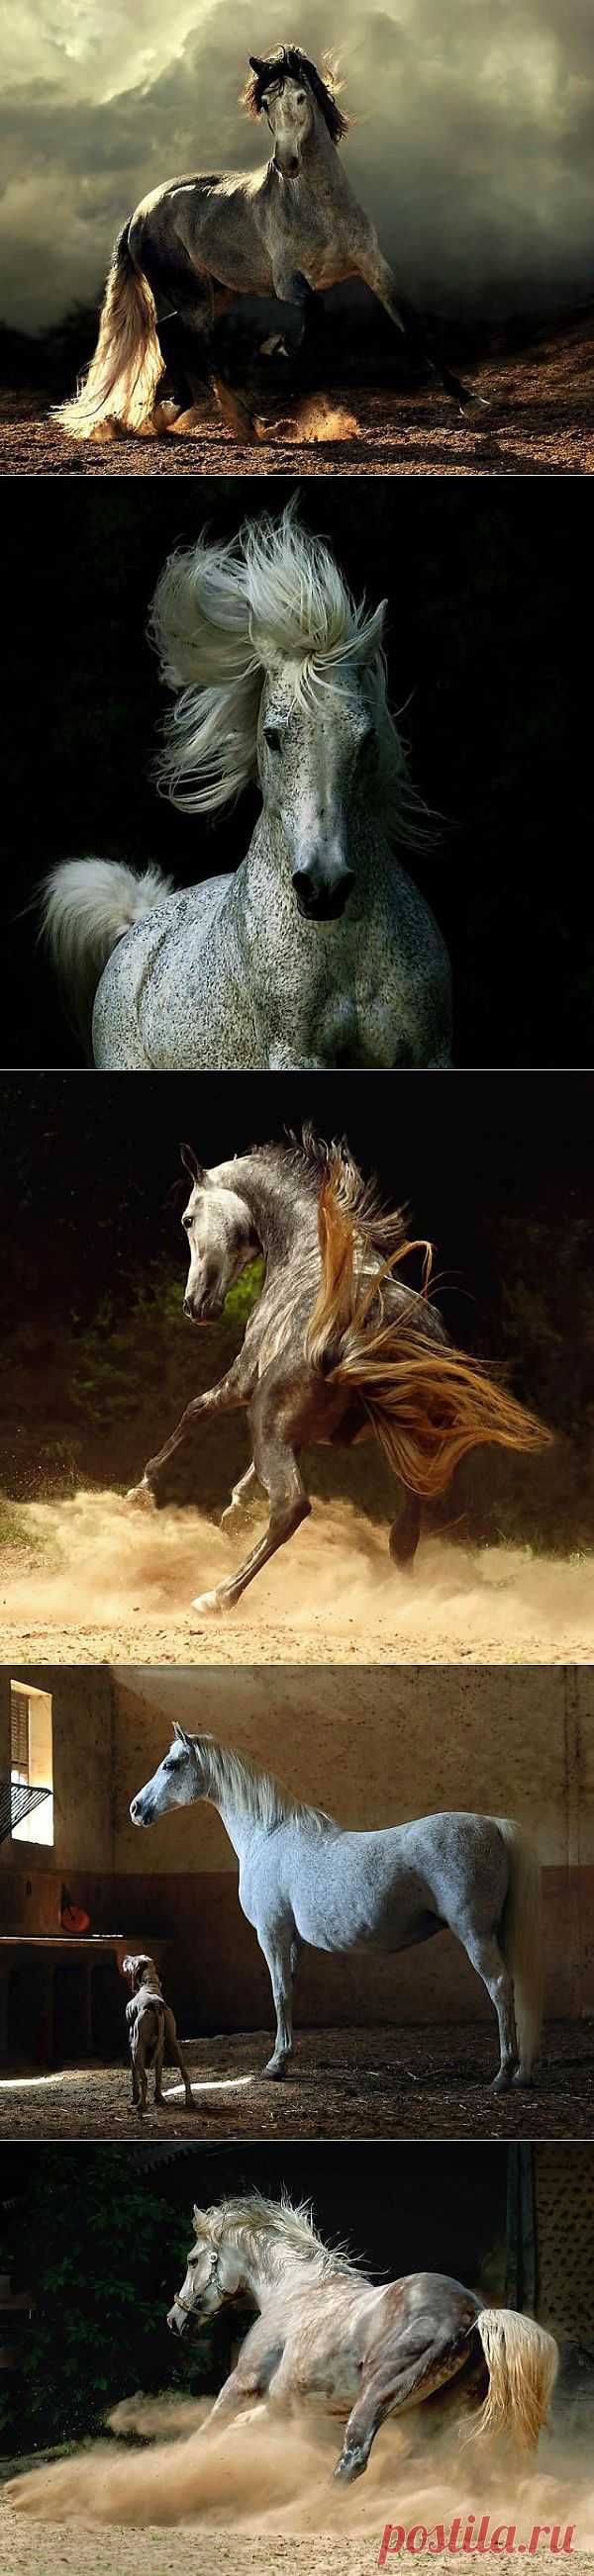 Грация и красота лошади | Зашибись